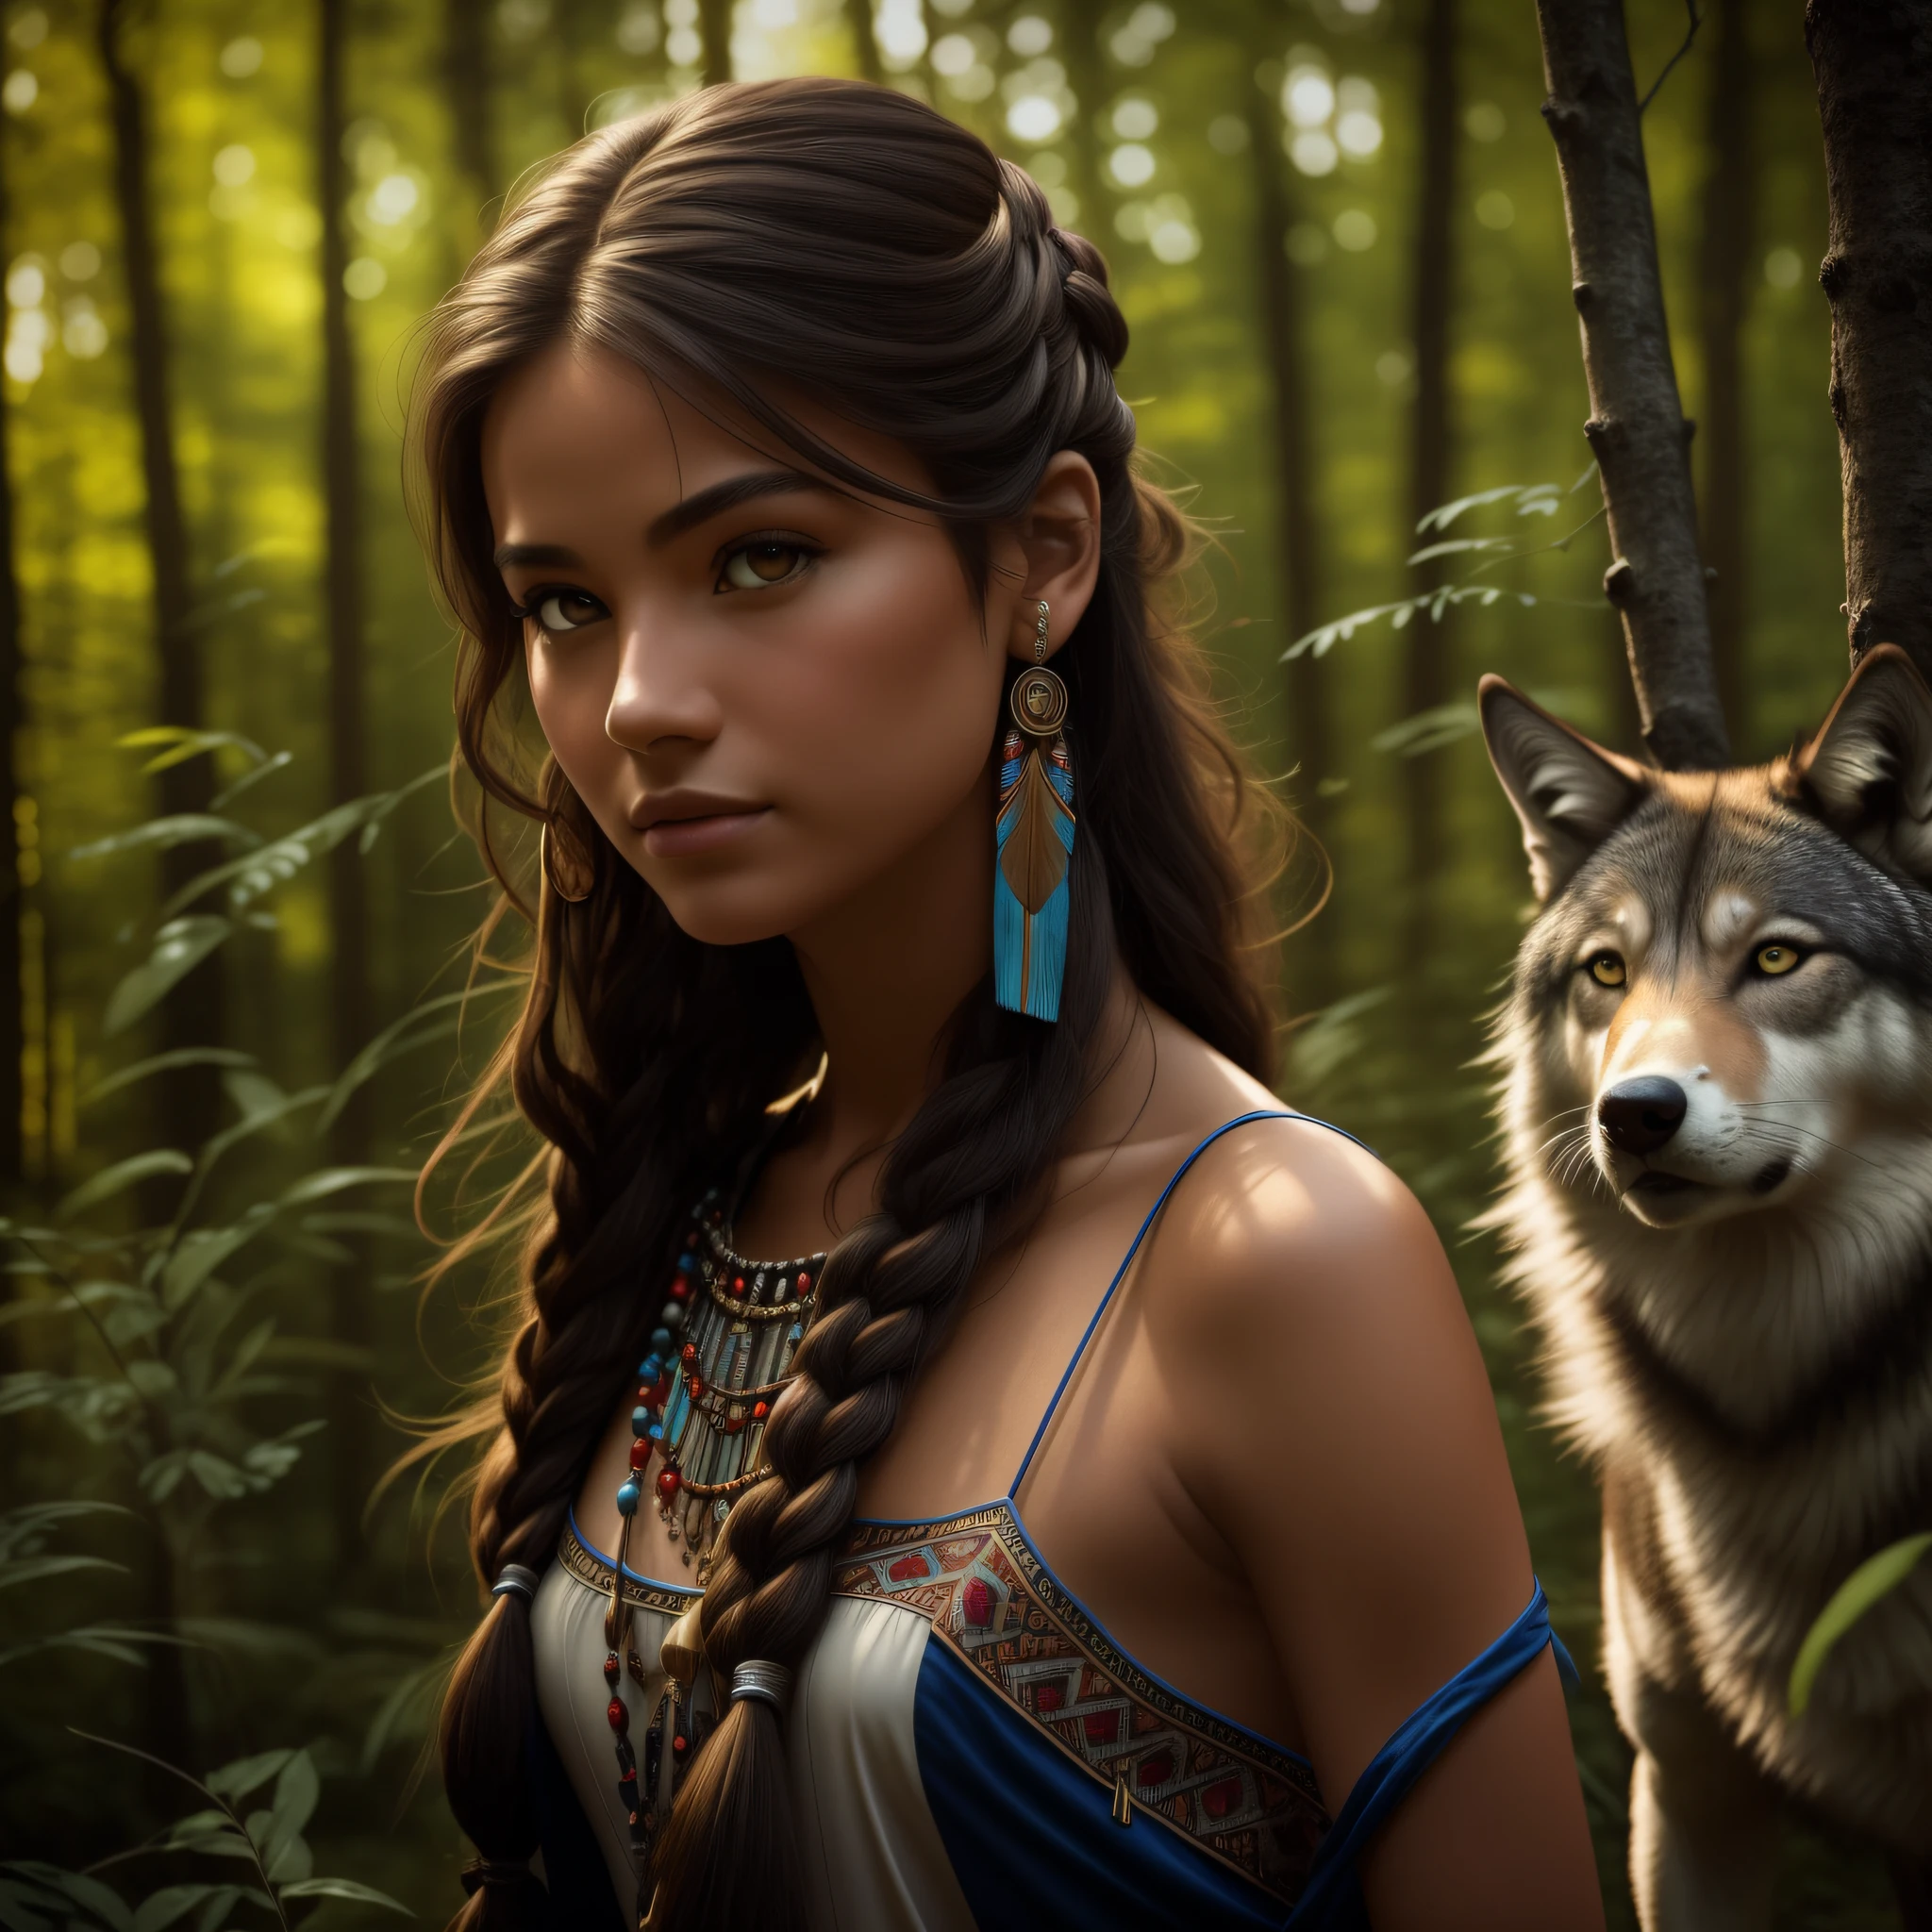 (Лучшее качество, шедевр: 1.1), (Реализм: 1.4),(шедевр, реалистичный: 1.4), (предельная точность: 1.2); (Передний: 1.3), реалистичный portrait of a Native American girl with indigenous adornments with her ultra реалистичный pet wolf in the forest, Племенное платье, очень длинные волосы, голые плечи, ночное небо, Свечение галактики, Океан, вода, наклон головы, ветер, облака, Естественный свет, Открытый, Один, ПЕРЕРЫВ, кинематографический свет, сверхвысокое разрешение, 8к ухд, Пленочные бусины,  идеальная анатомия, Delicate and нежный skin, Лучшие тени, нежный, СЫРОЙ, высокое разрешение, охотница, ночь, яркость полной луны.